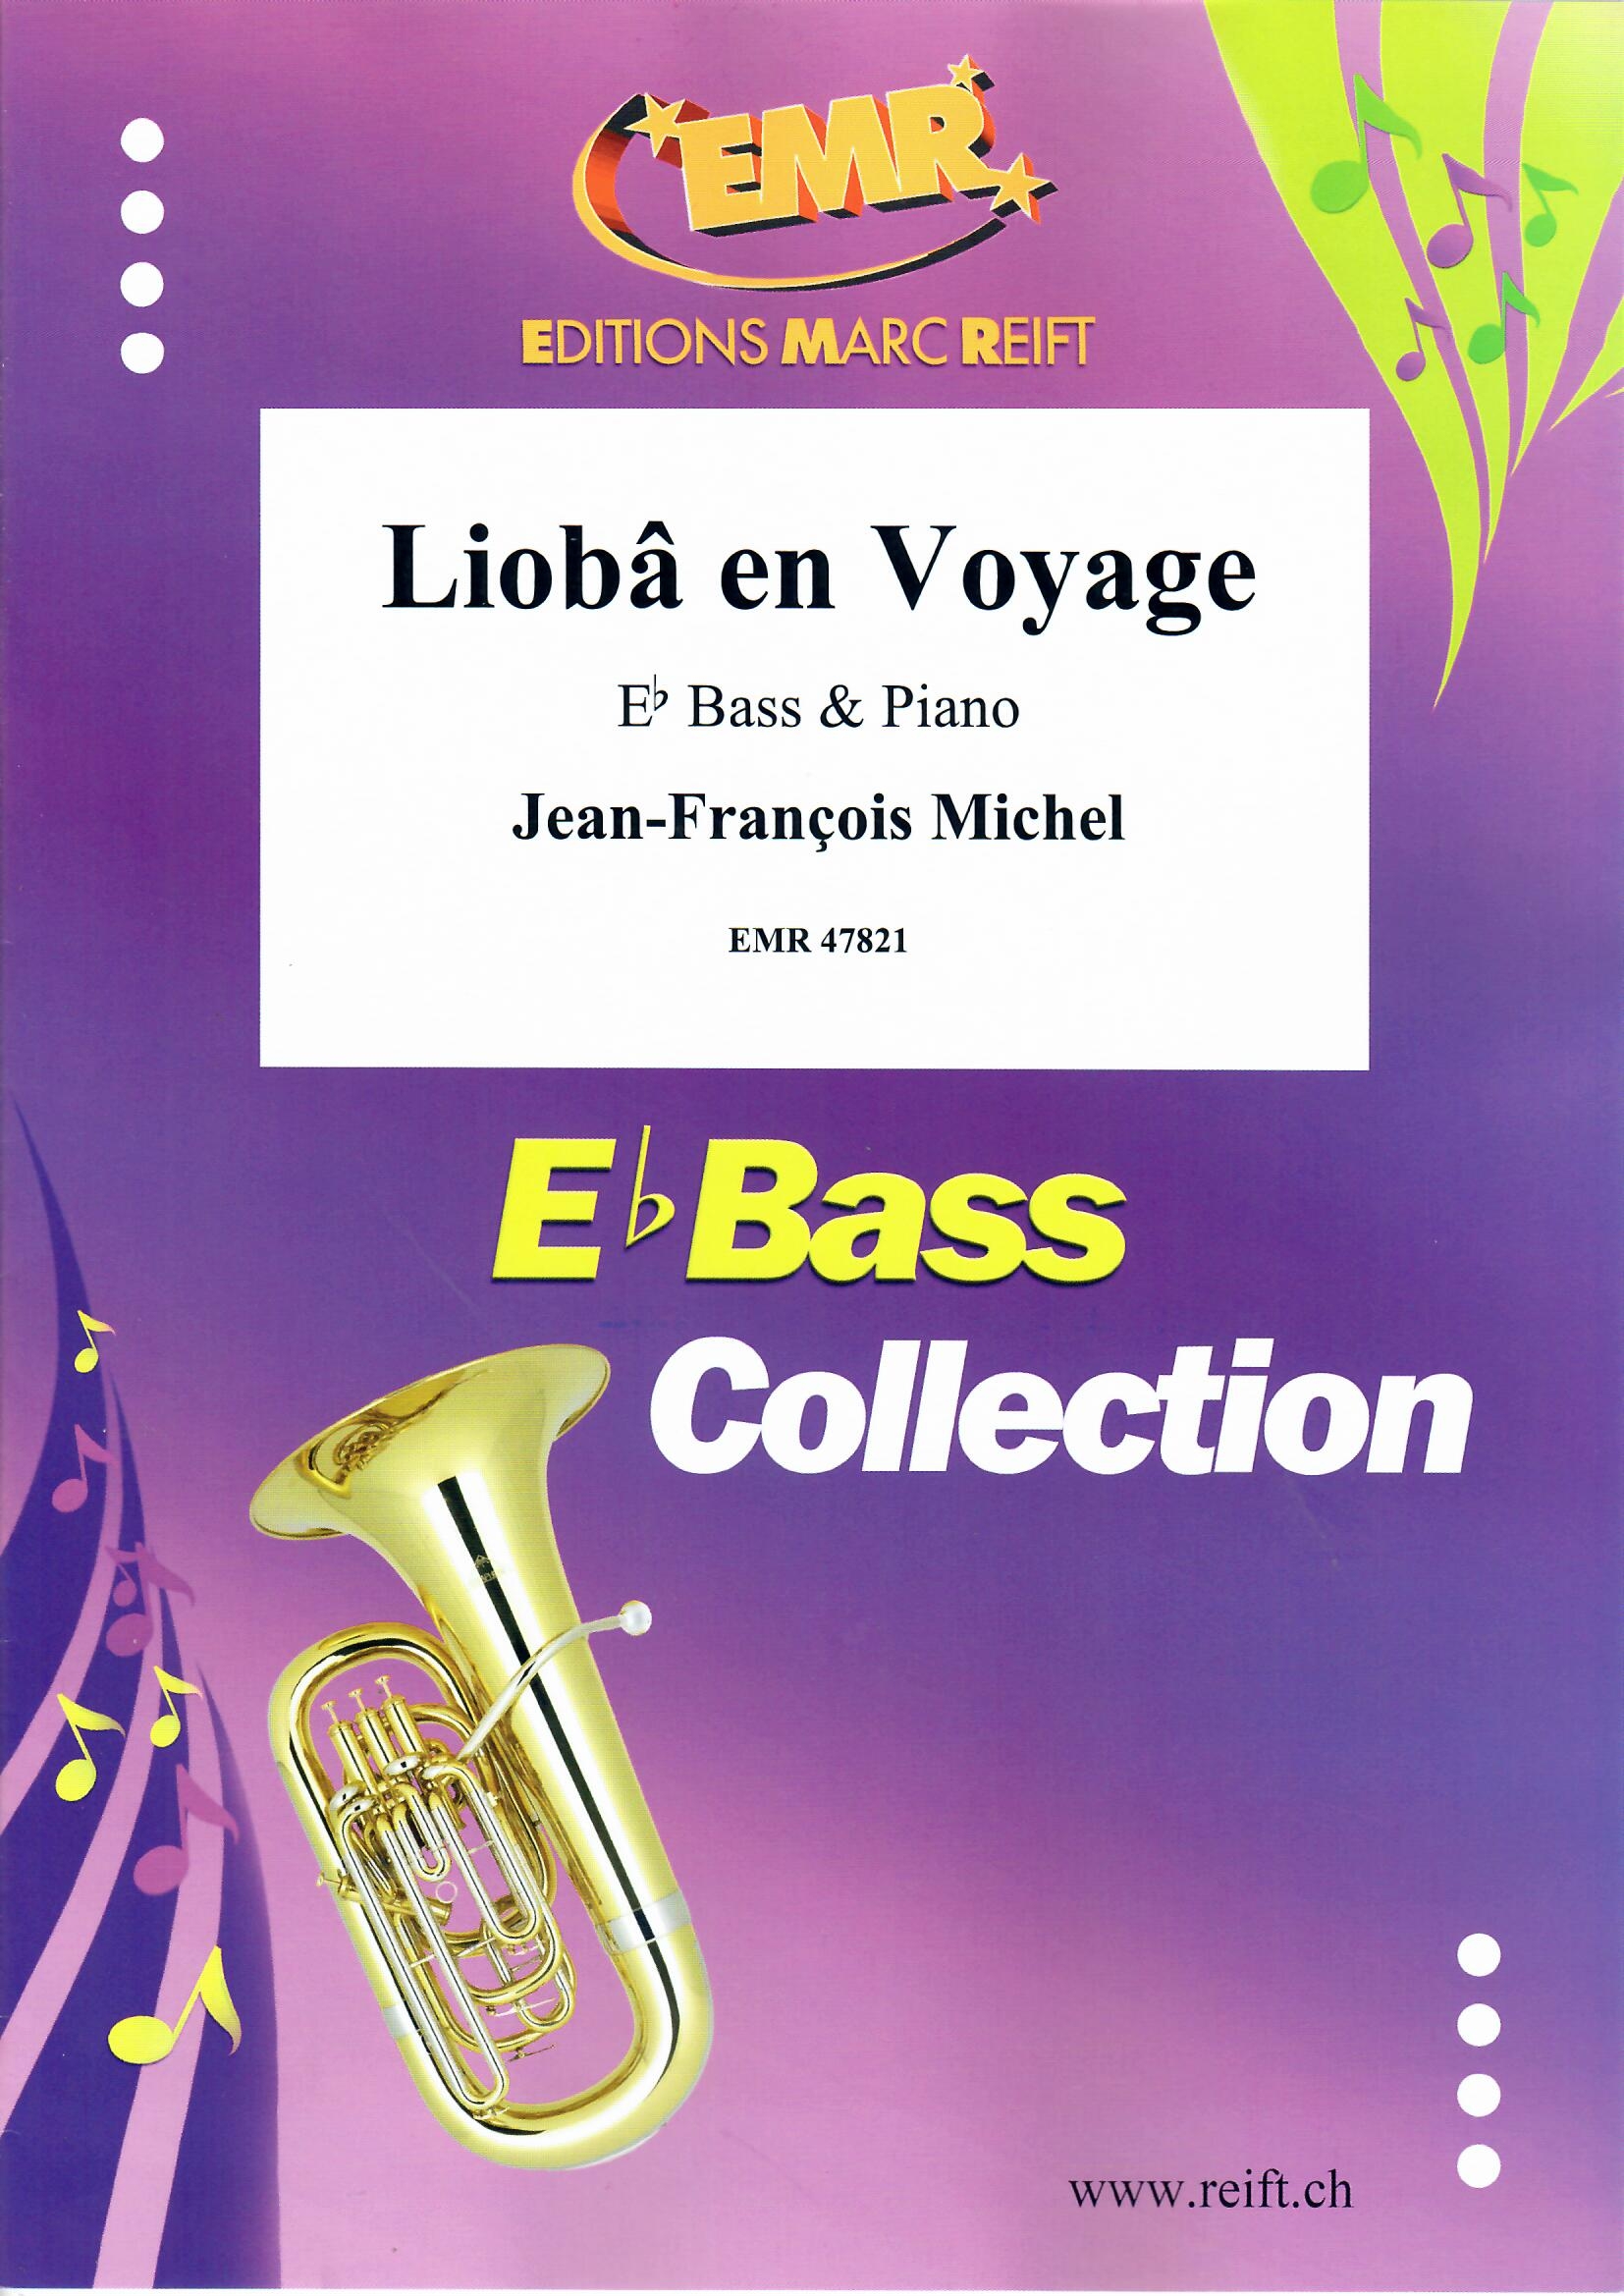 LIOBâ EN VOYAGE - Eb.Bass & Piano